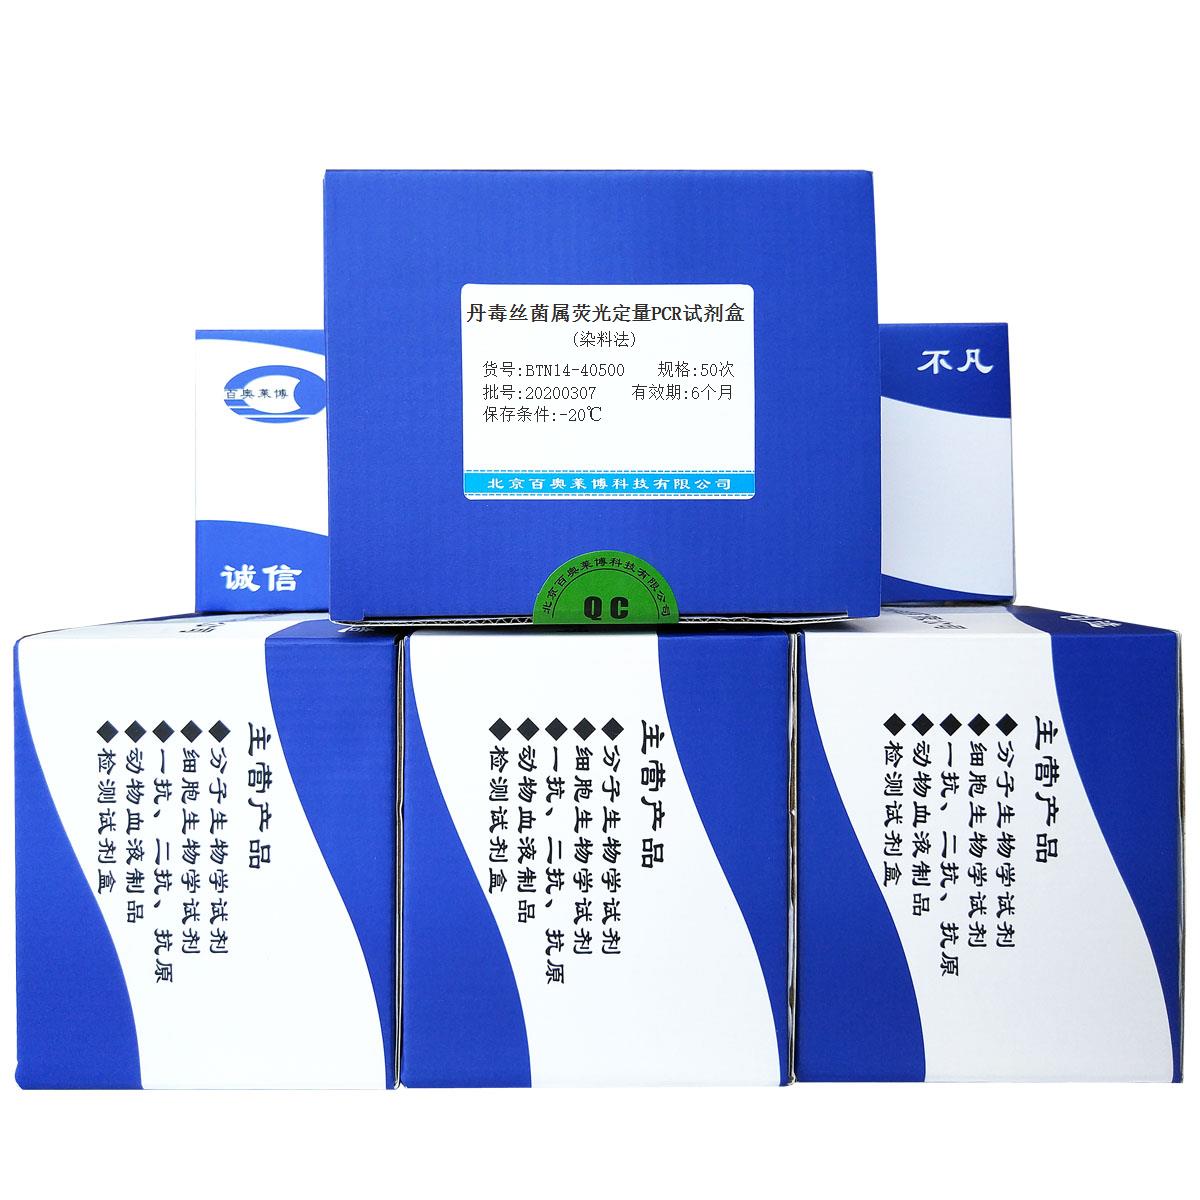 丹毒丝菌属荧光定量PCR试剂盒(染料法)